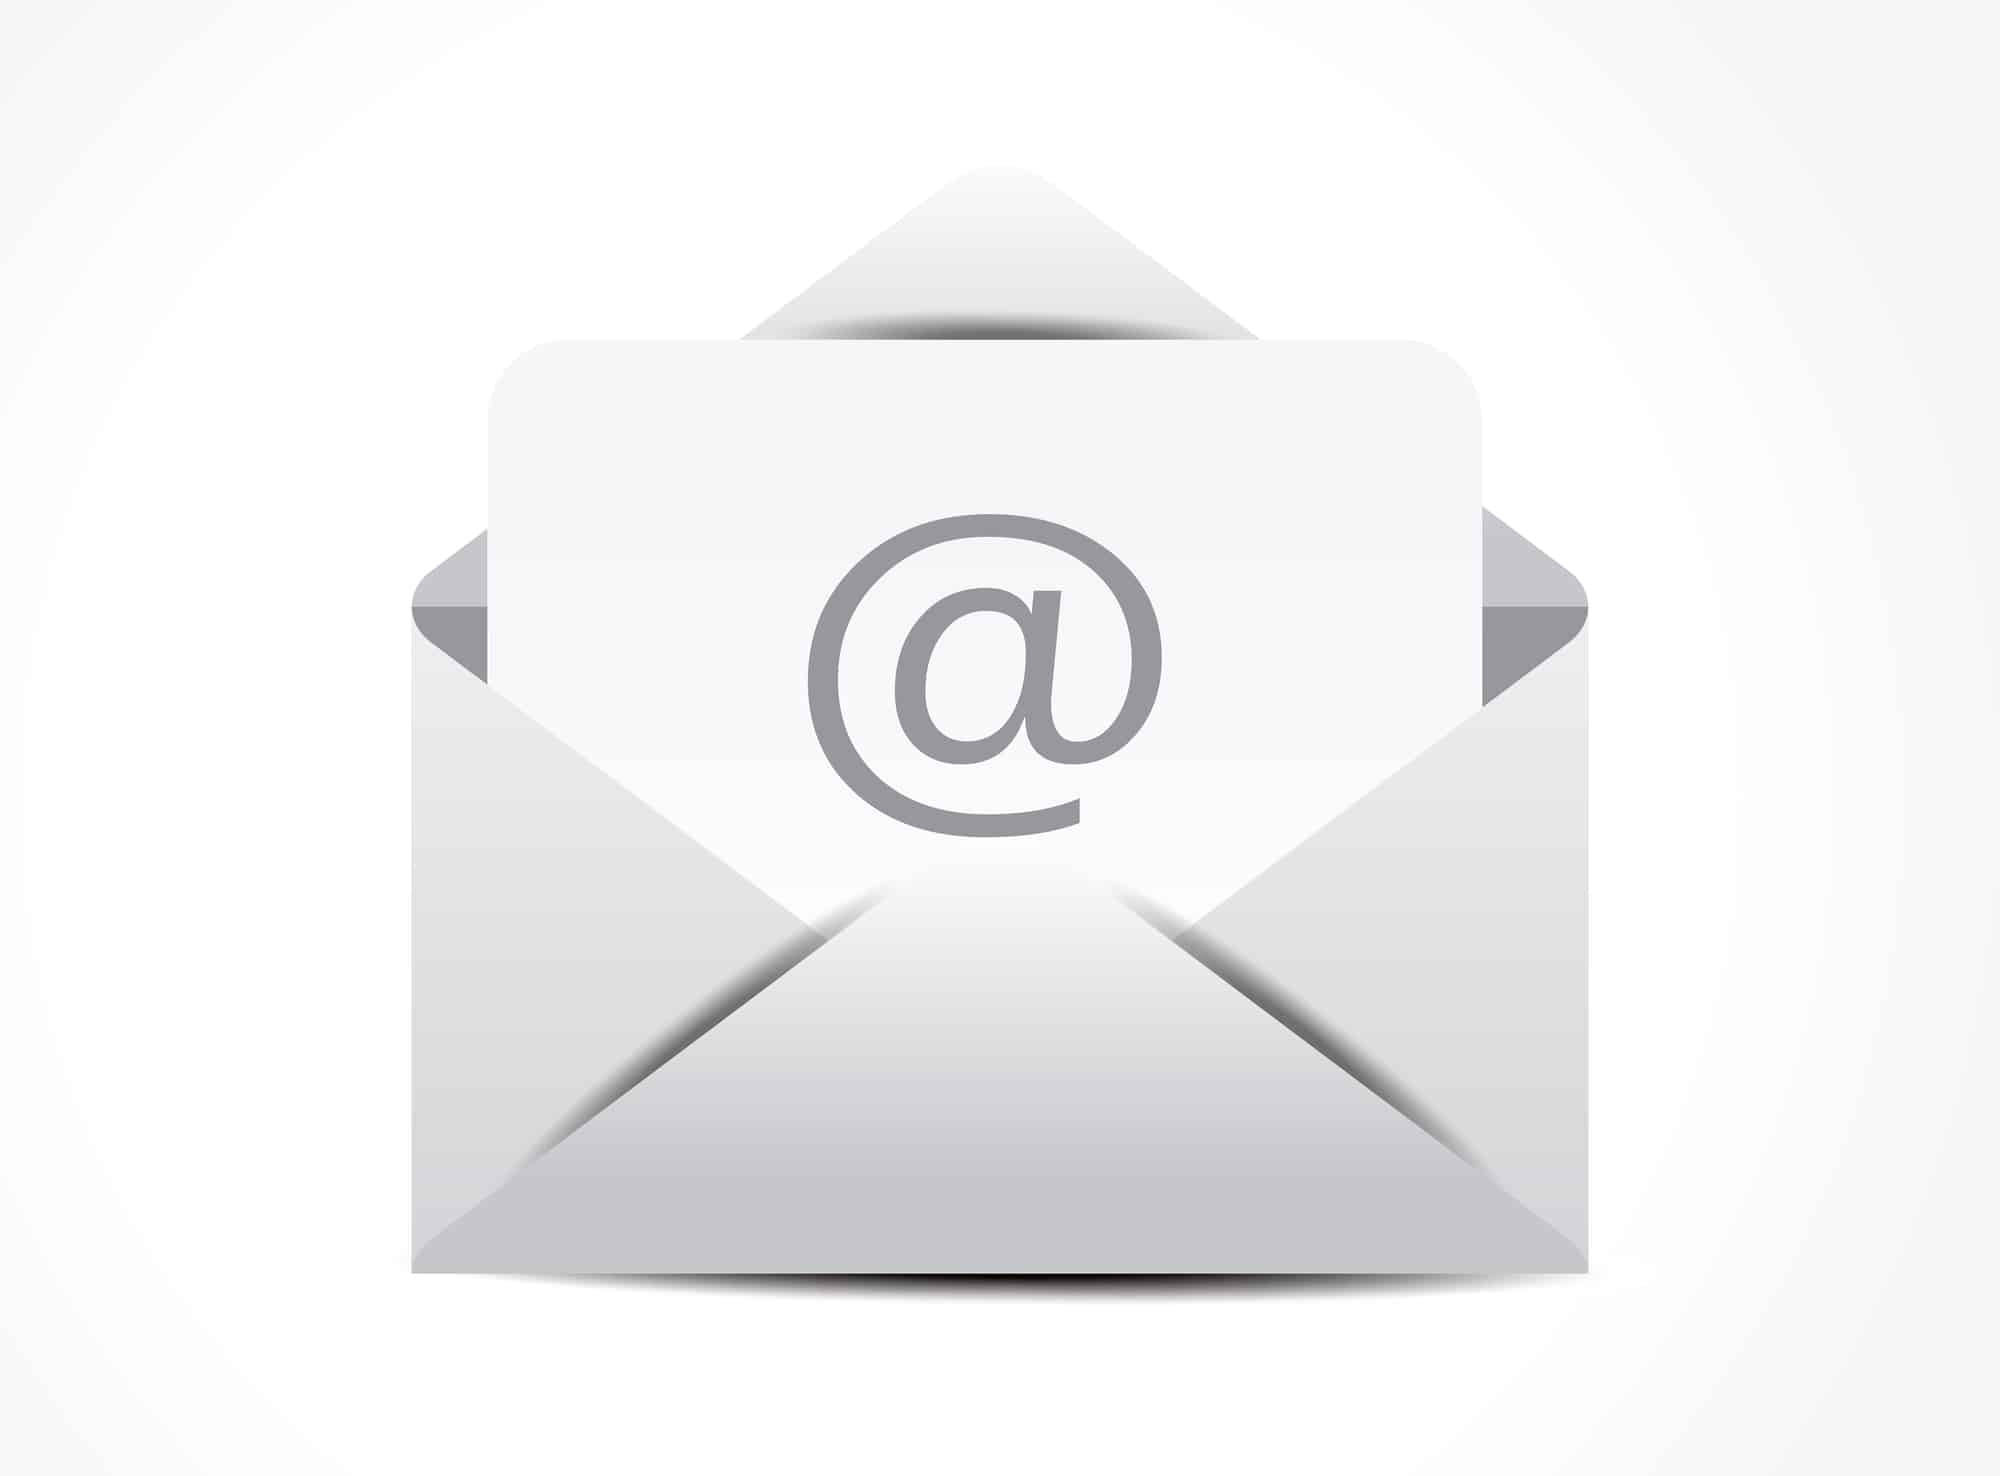 Comment configurer Outlook via un serveur proxy pour afficher et télécharger des courriels ?